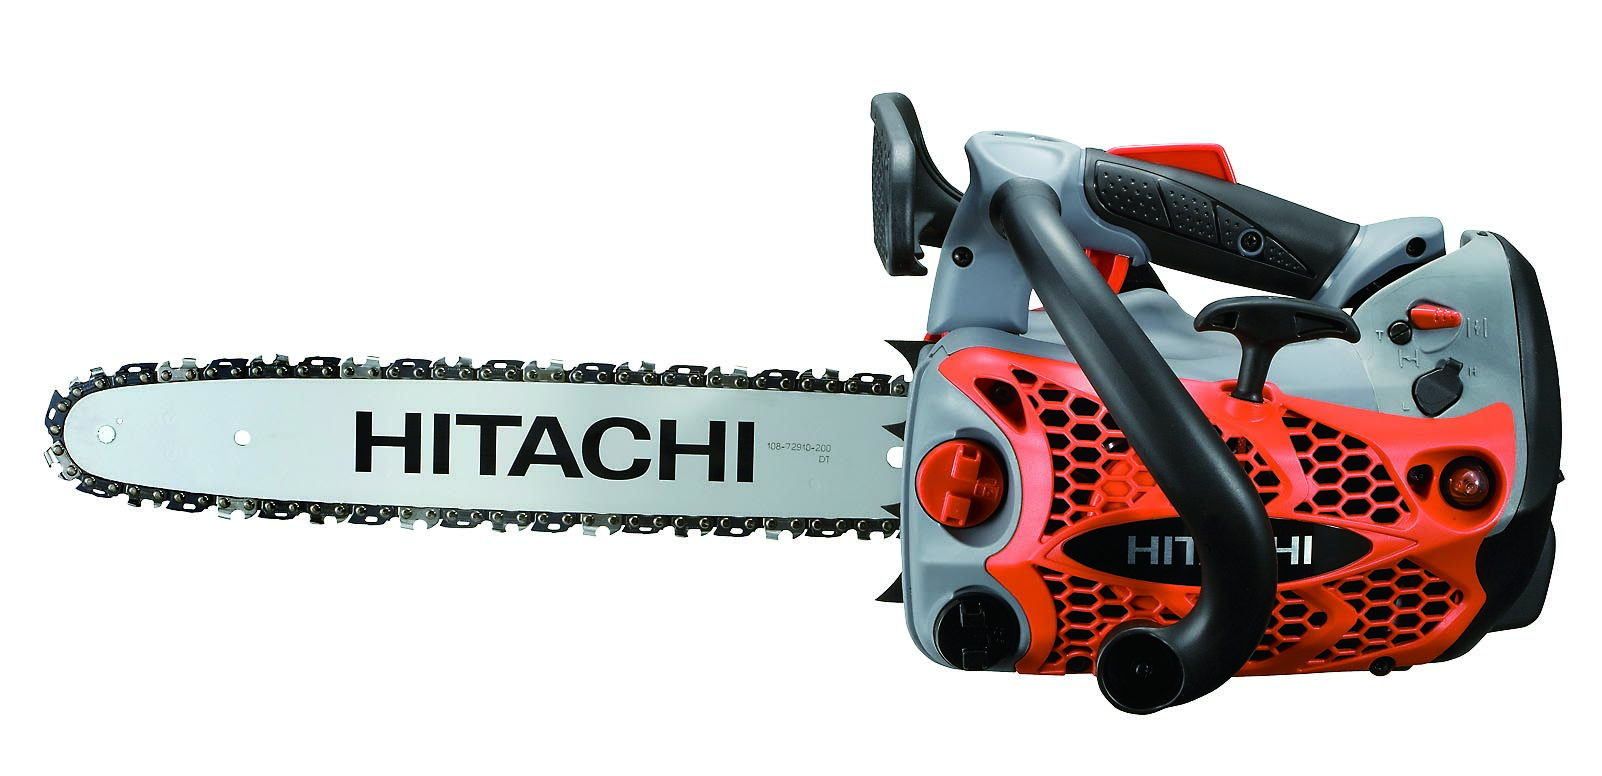 Hitachi CS33ET